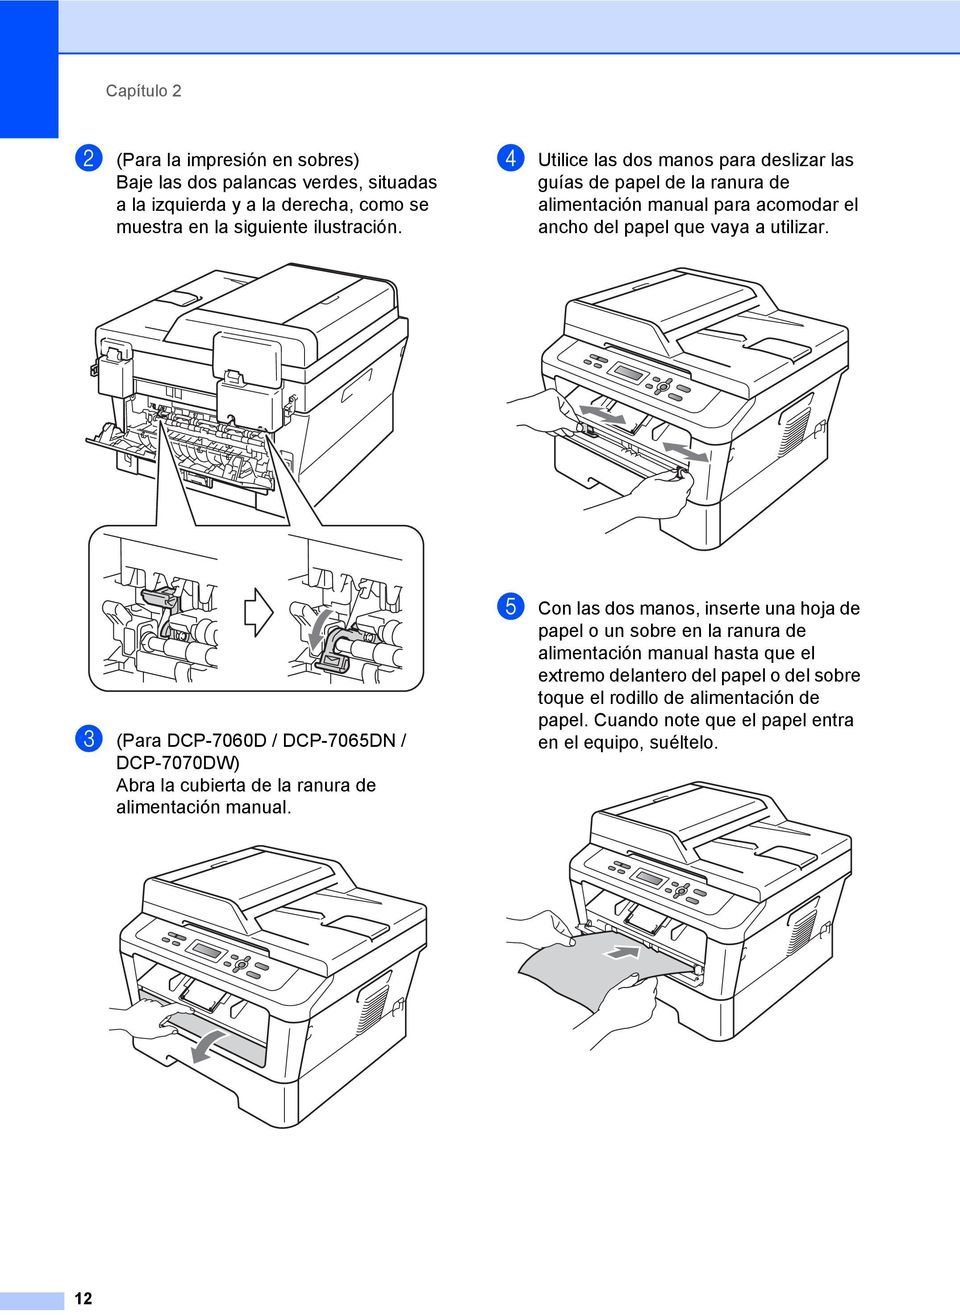 c (Para DCP-7060D / DCP-7065DN / DCP-7070DW) Abra la cubierta de la ranura de alimentación manual.